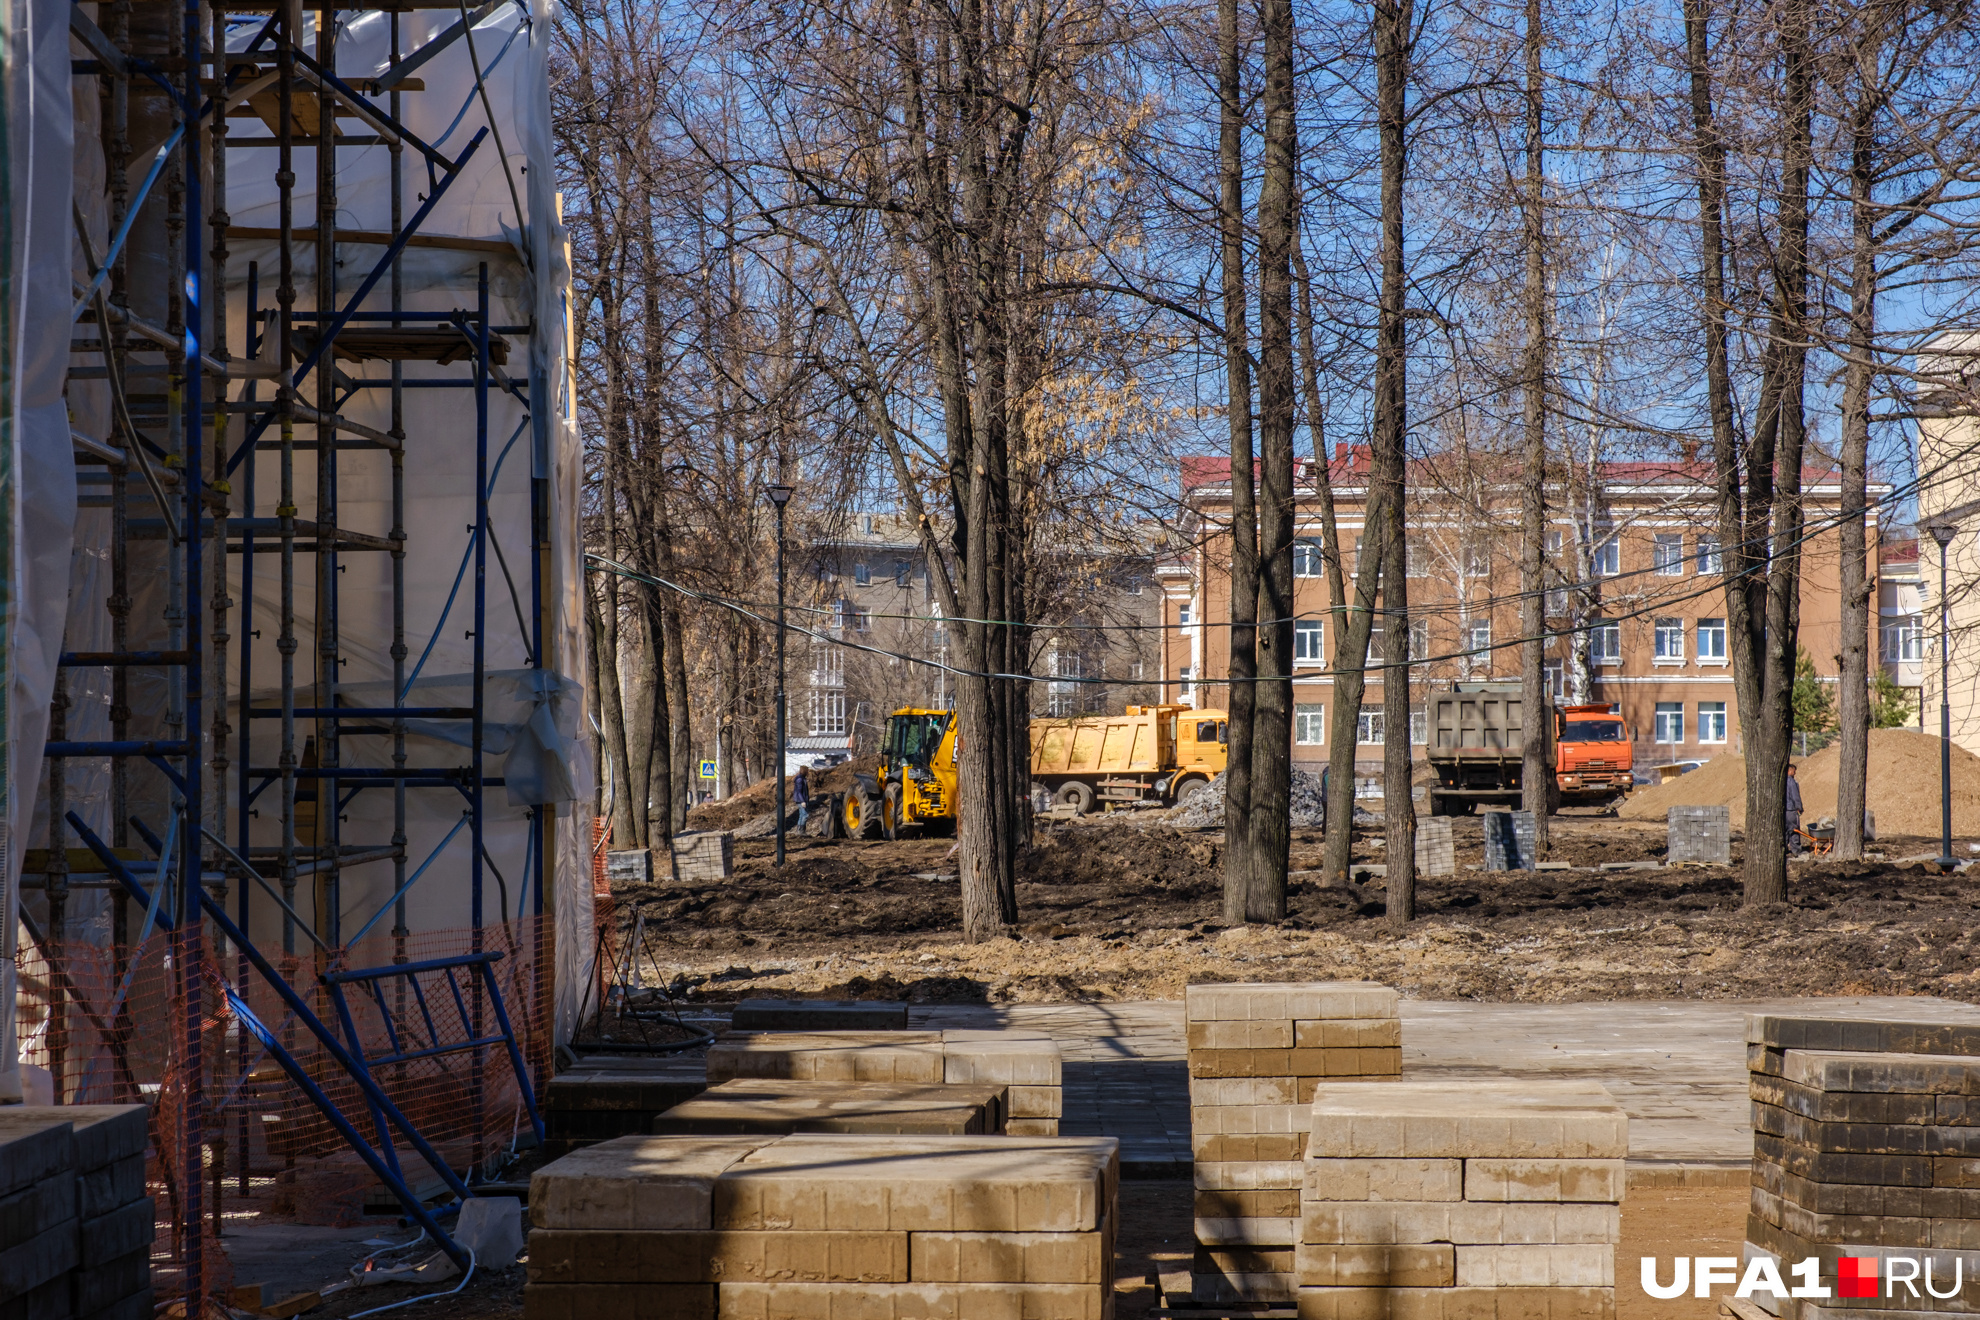 30 апреля уфа. Парк им 1 мая реконструкция. Парк Нефтехимиков после реконструкции Уфа.